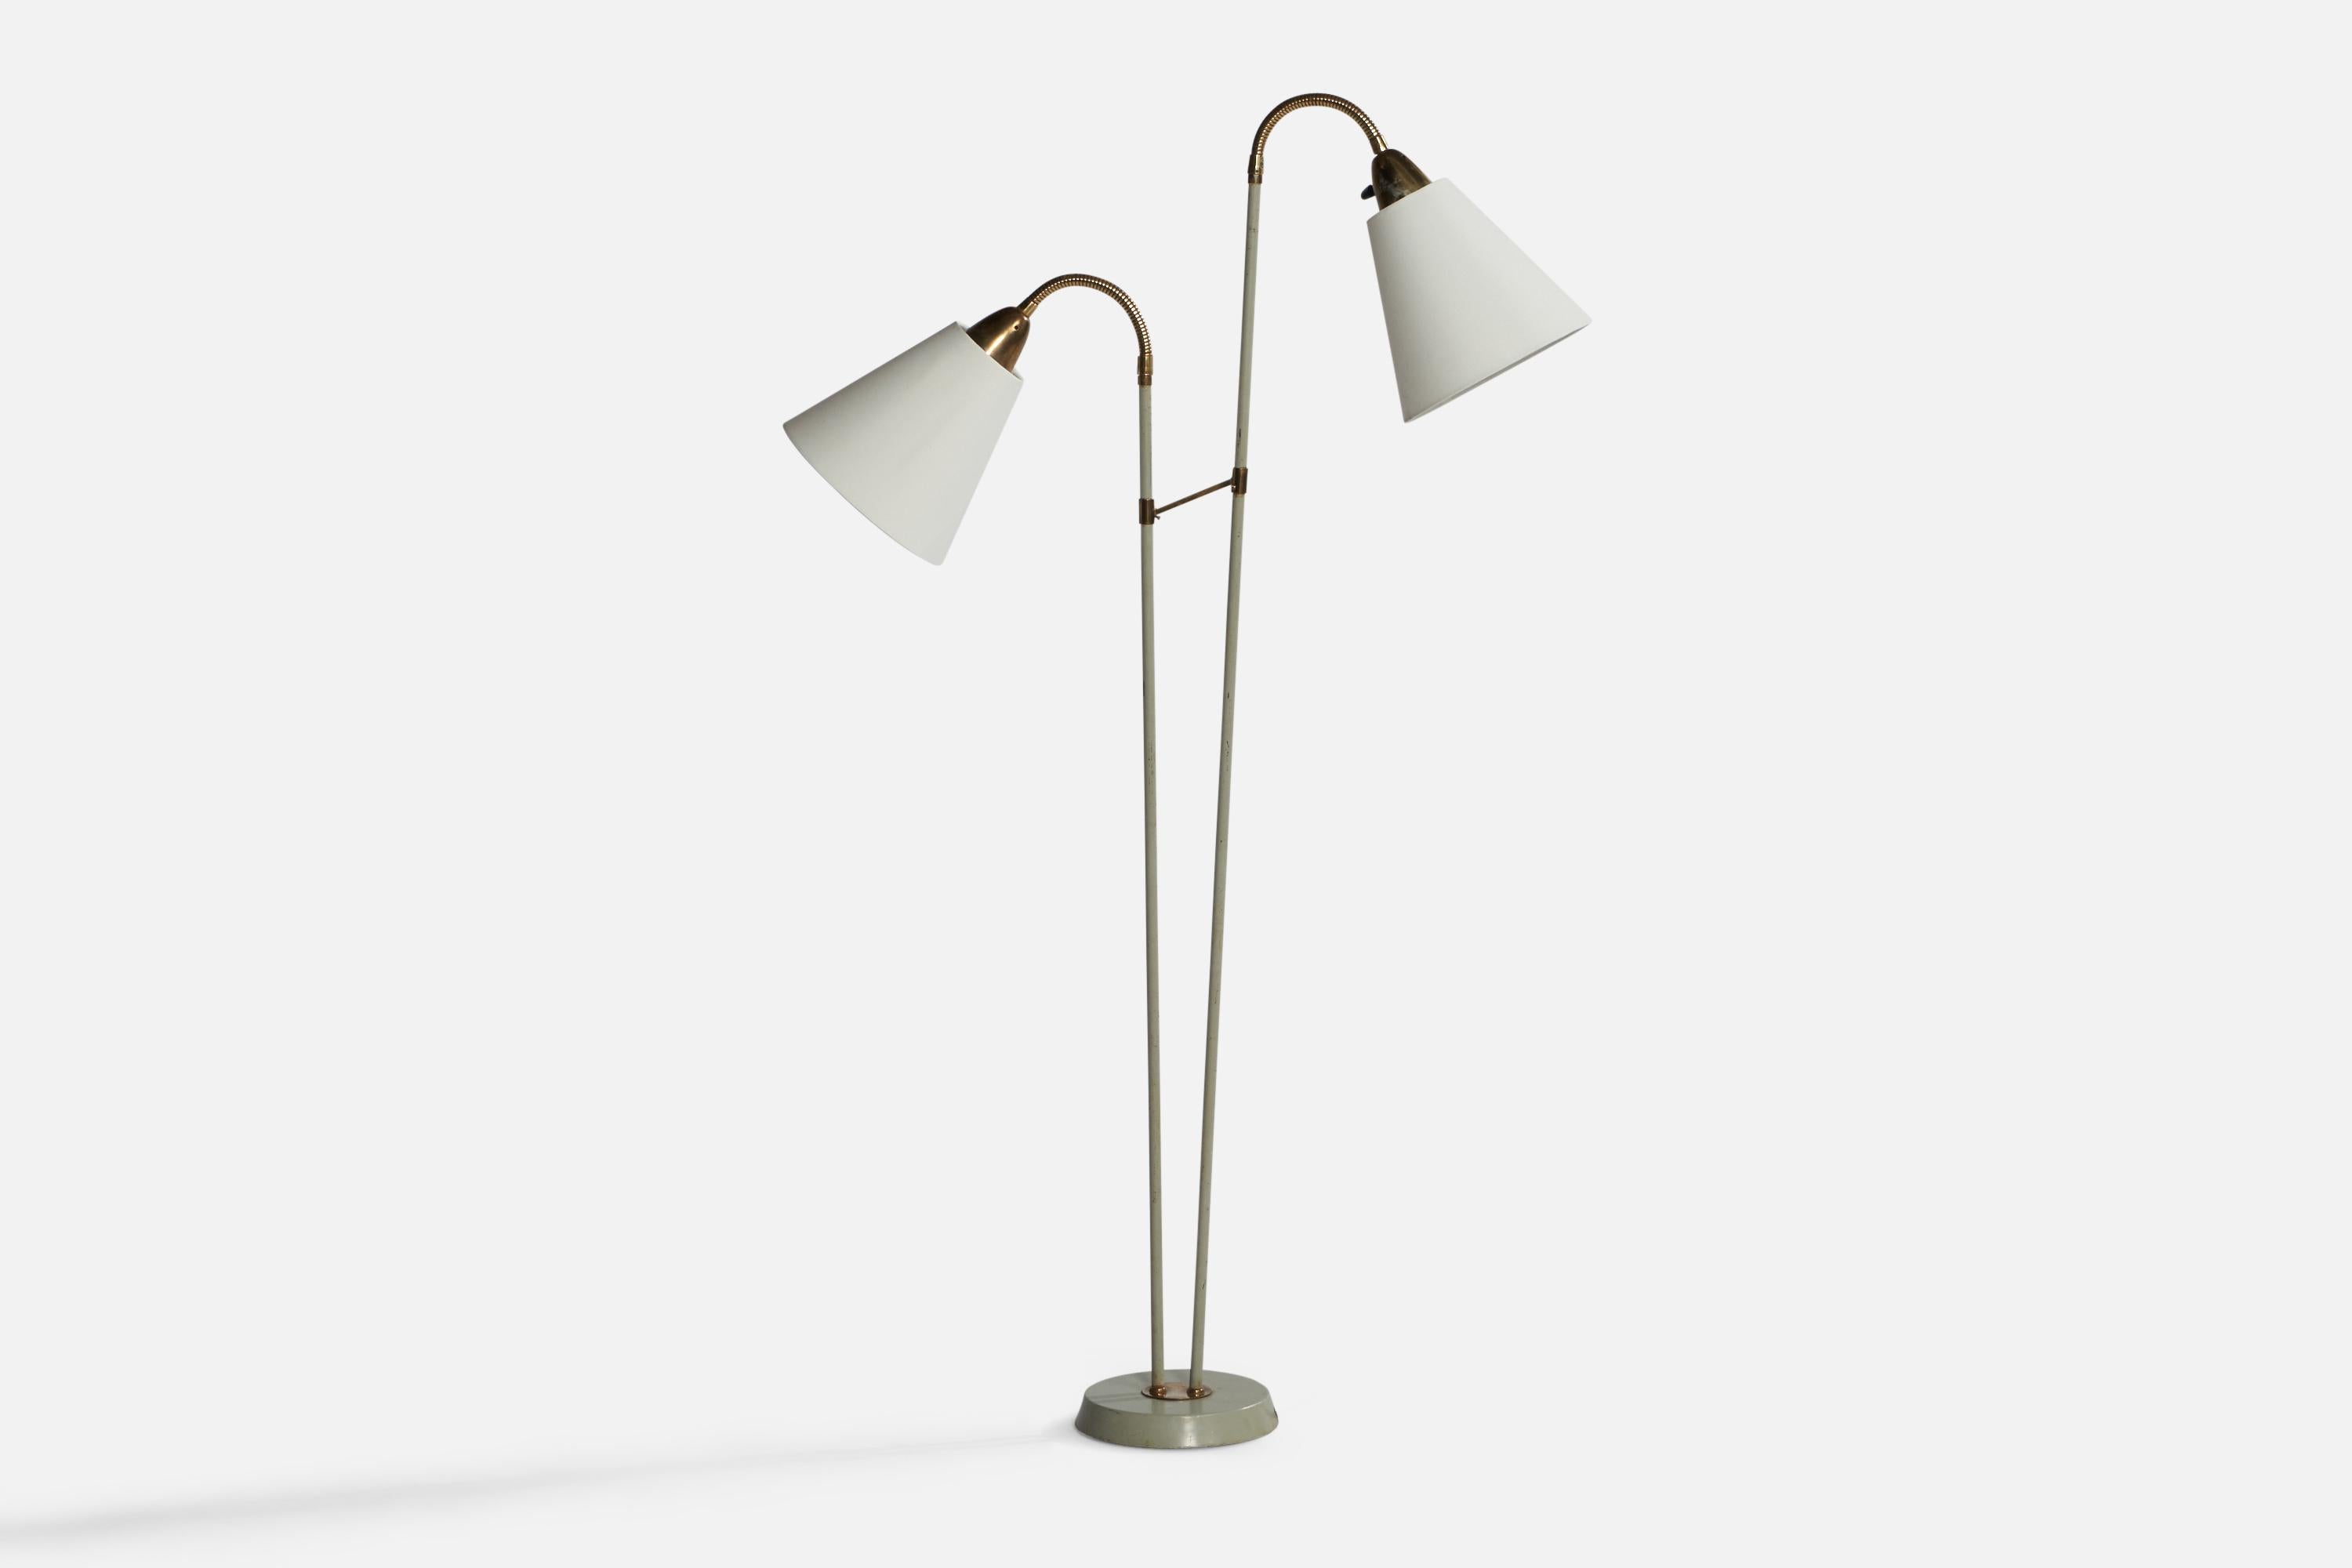 Stehlampe aus Messing und grau lackiertem Metall und weißem Stoff, entworfen und hergestellt in Schweden, 1940er Jahre.

Gesamtabmessungen (Zoll): 55,5